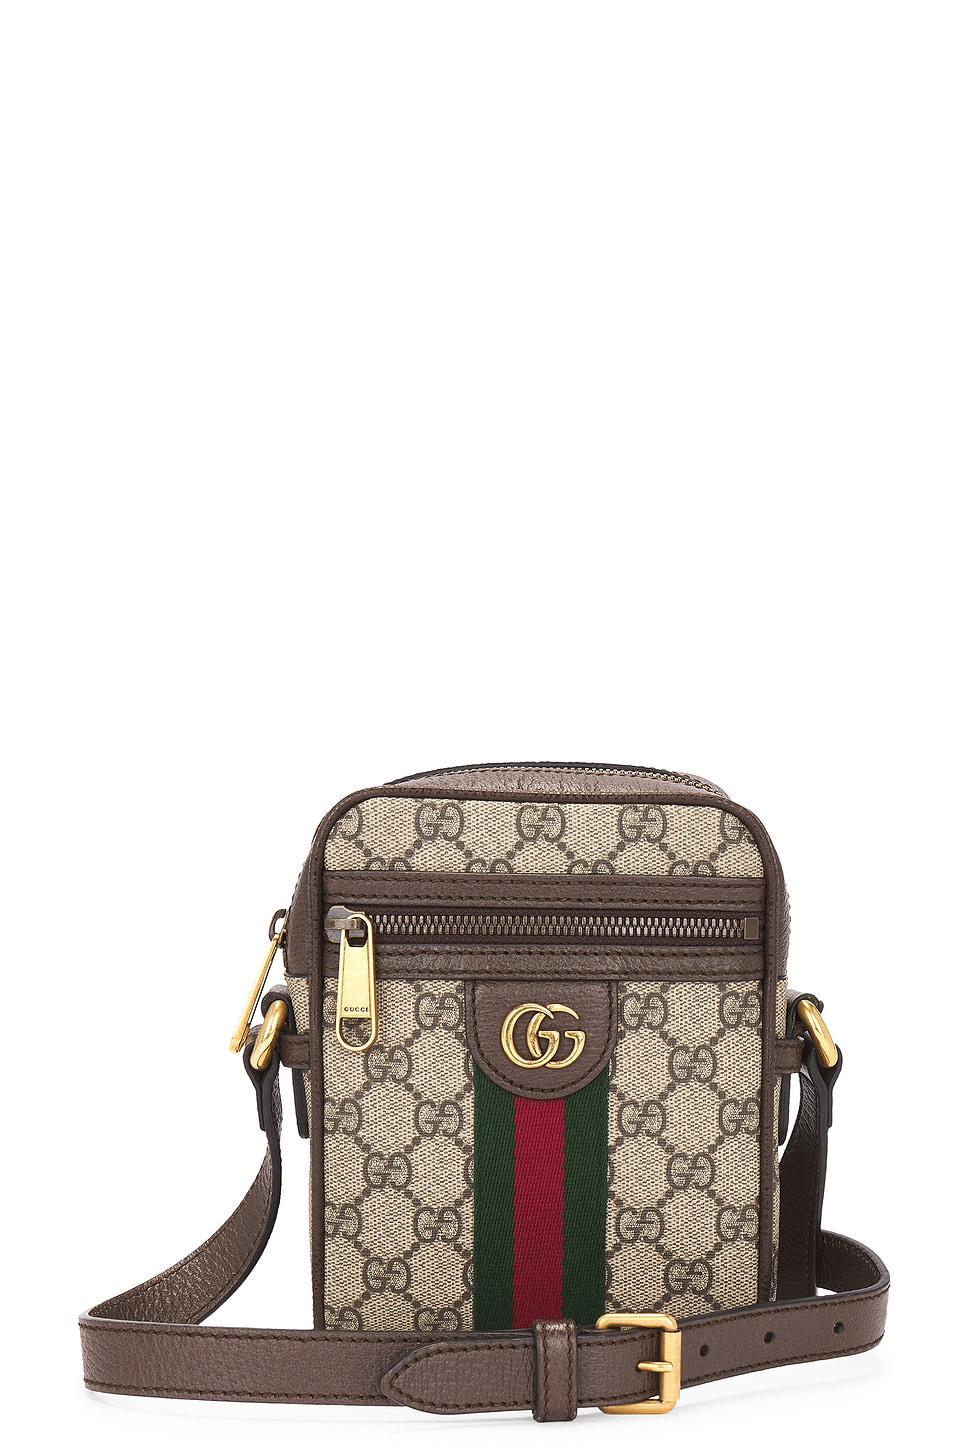 Gucci Gg Supreme Ophidia Shoulder Bag In Burgundy